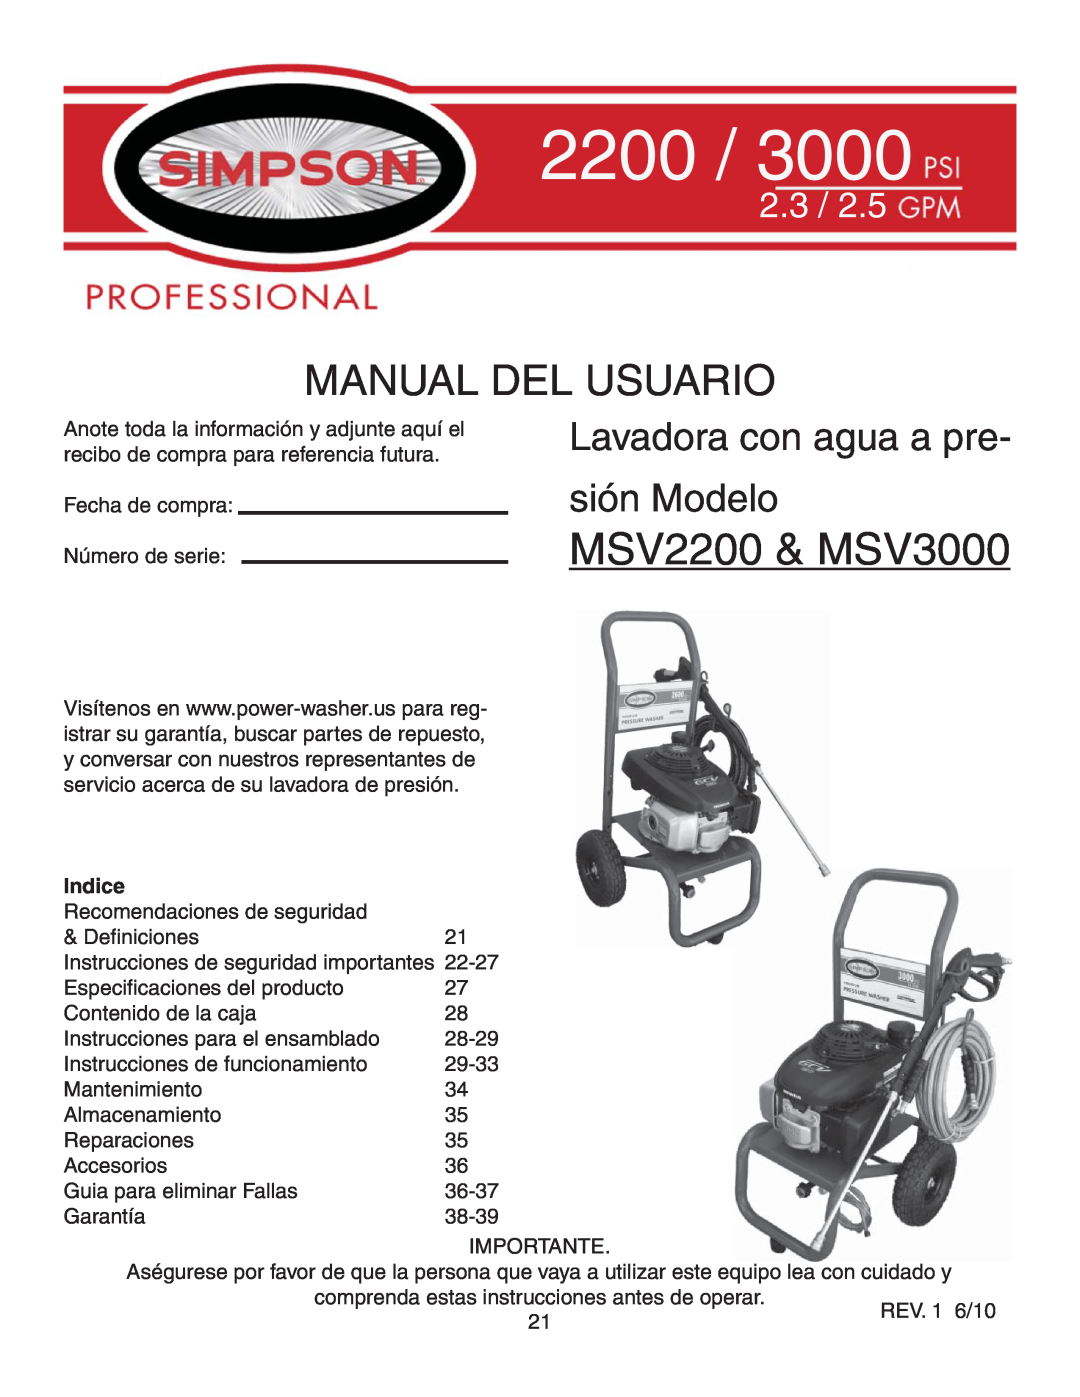 Simpson MSV2600 warranty MSV2200 & MSV3000, Manual Del Usuario, Lavadora con agua a pre sión Modelo, Indice, 2.3 